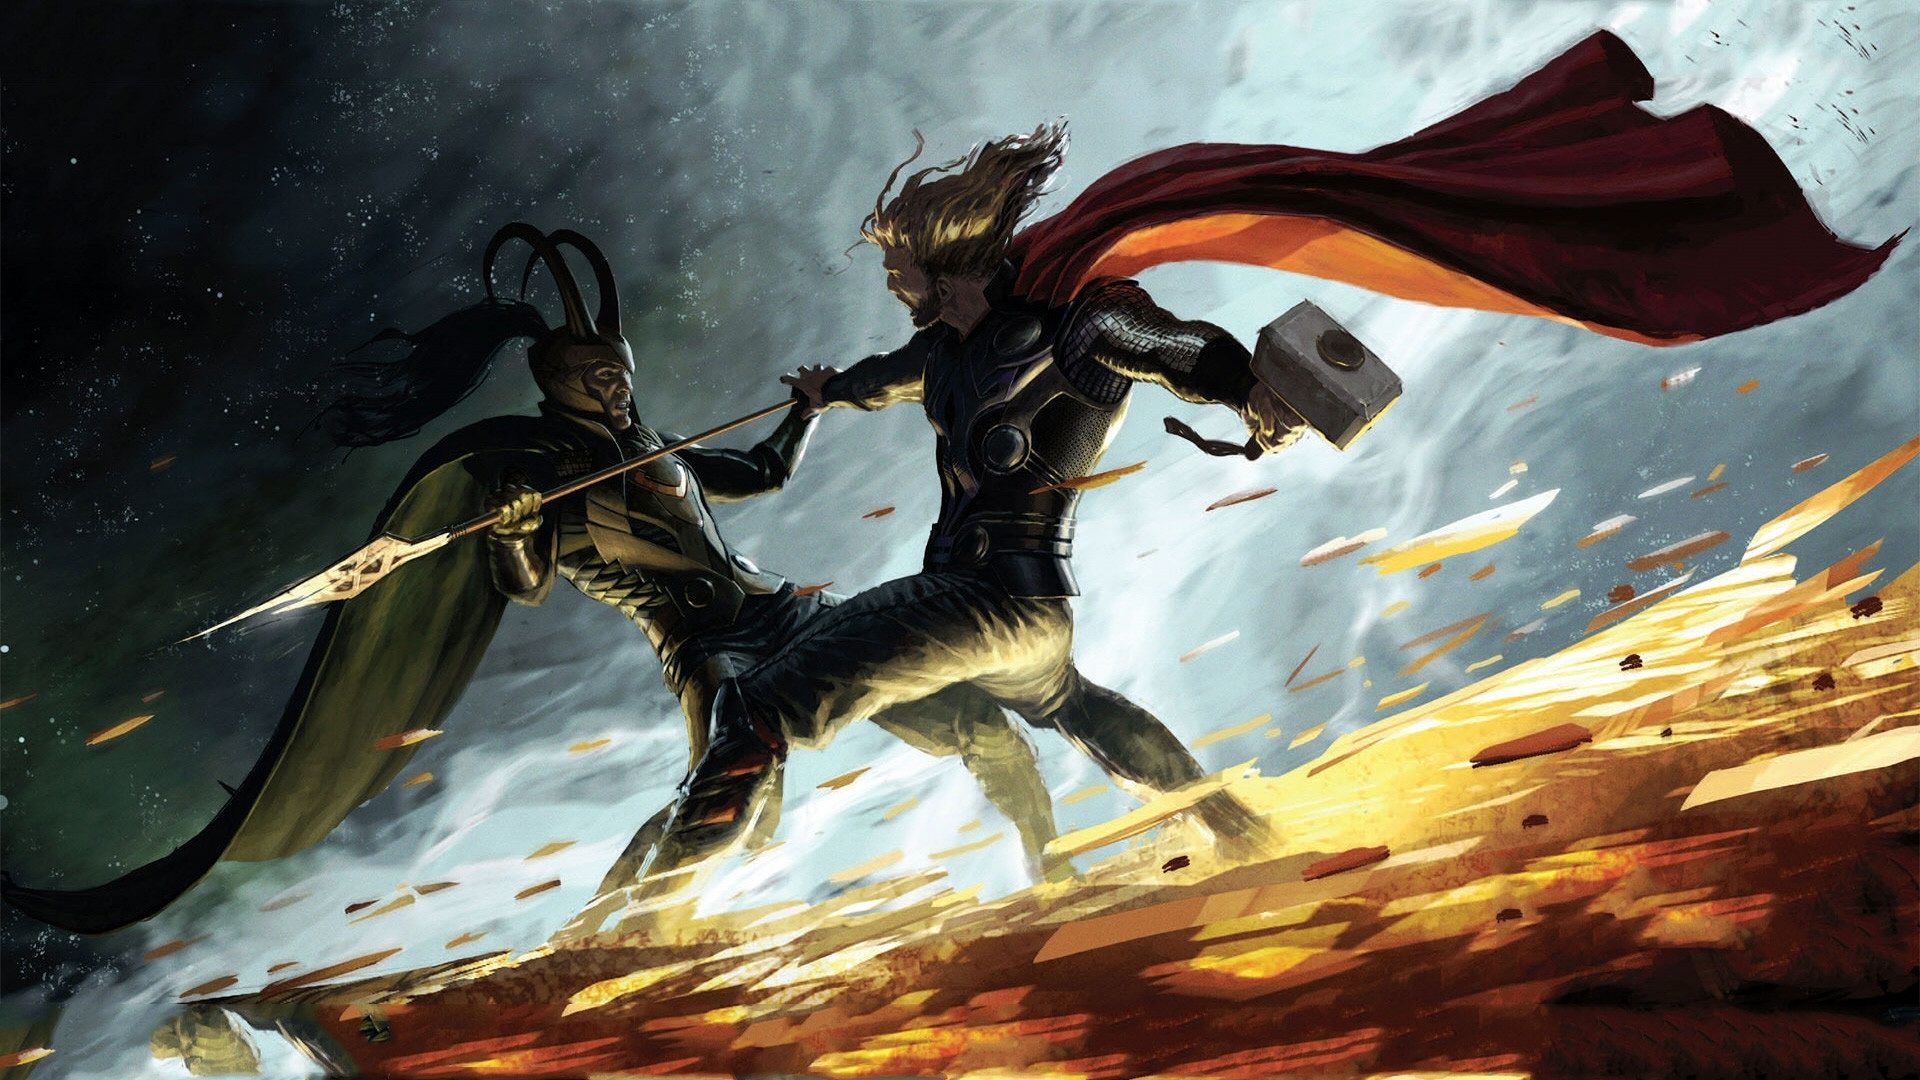 ¿Quienes serán los villanos de 'Thor 3: Ragnarok'?